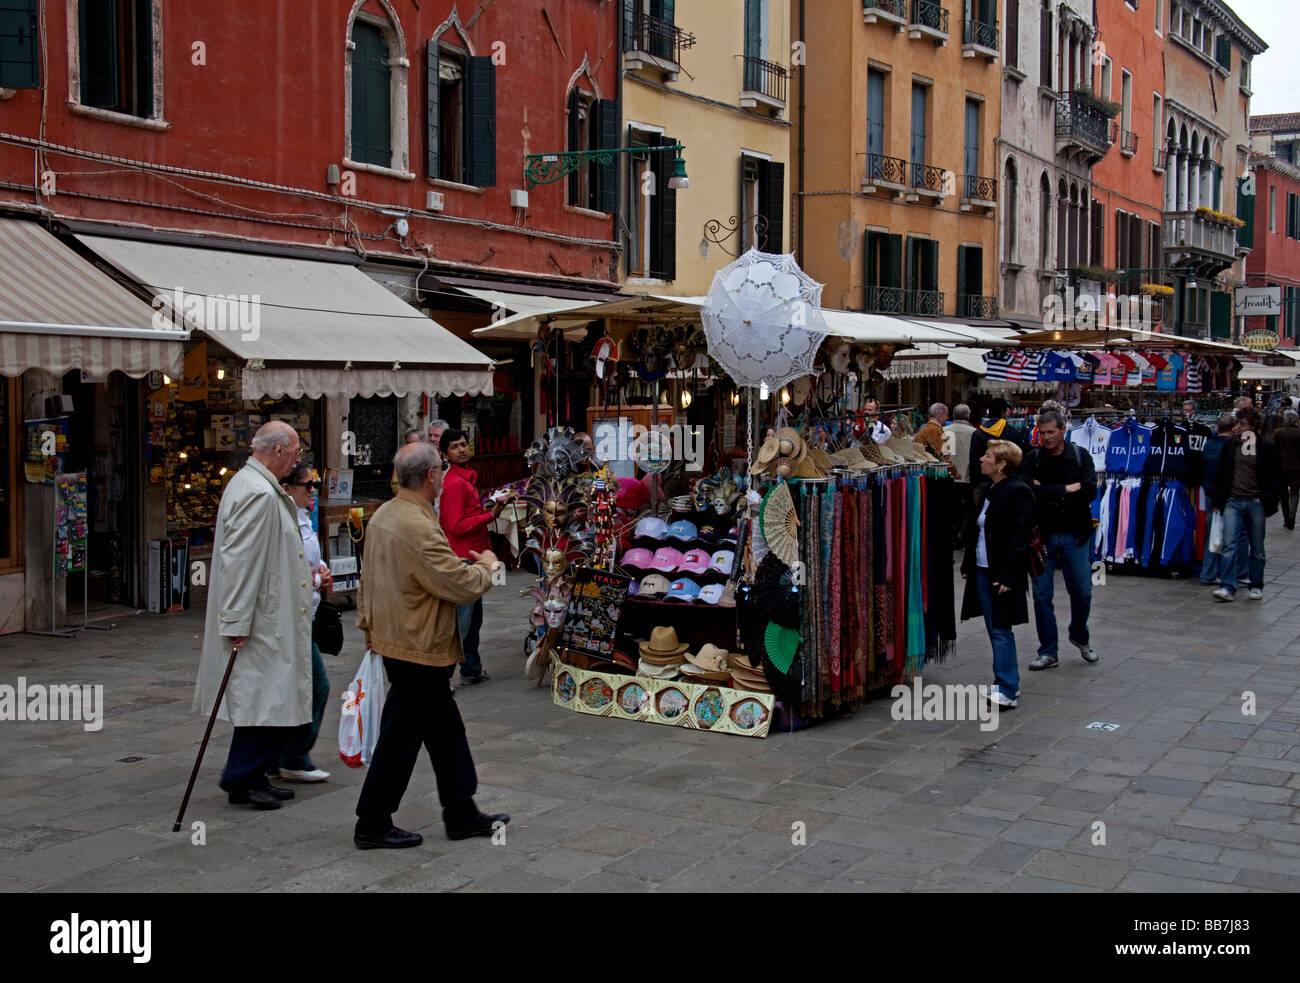 Busy Rio Tera S. Leonardo, shopping street with stalls Venice Italy Europe Stock Photo